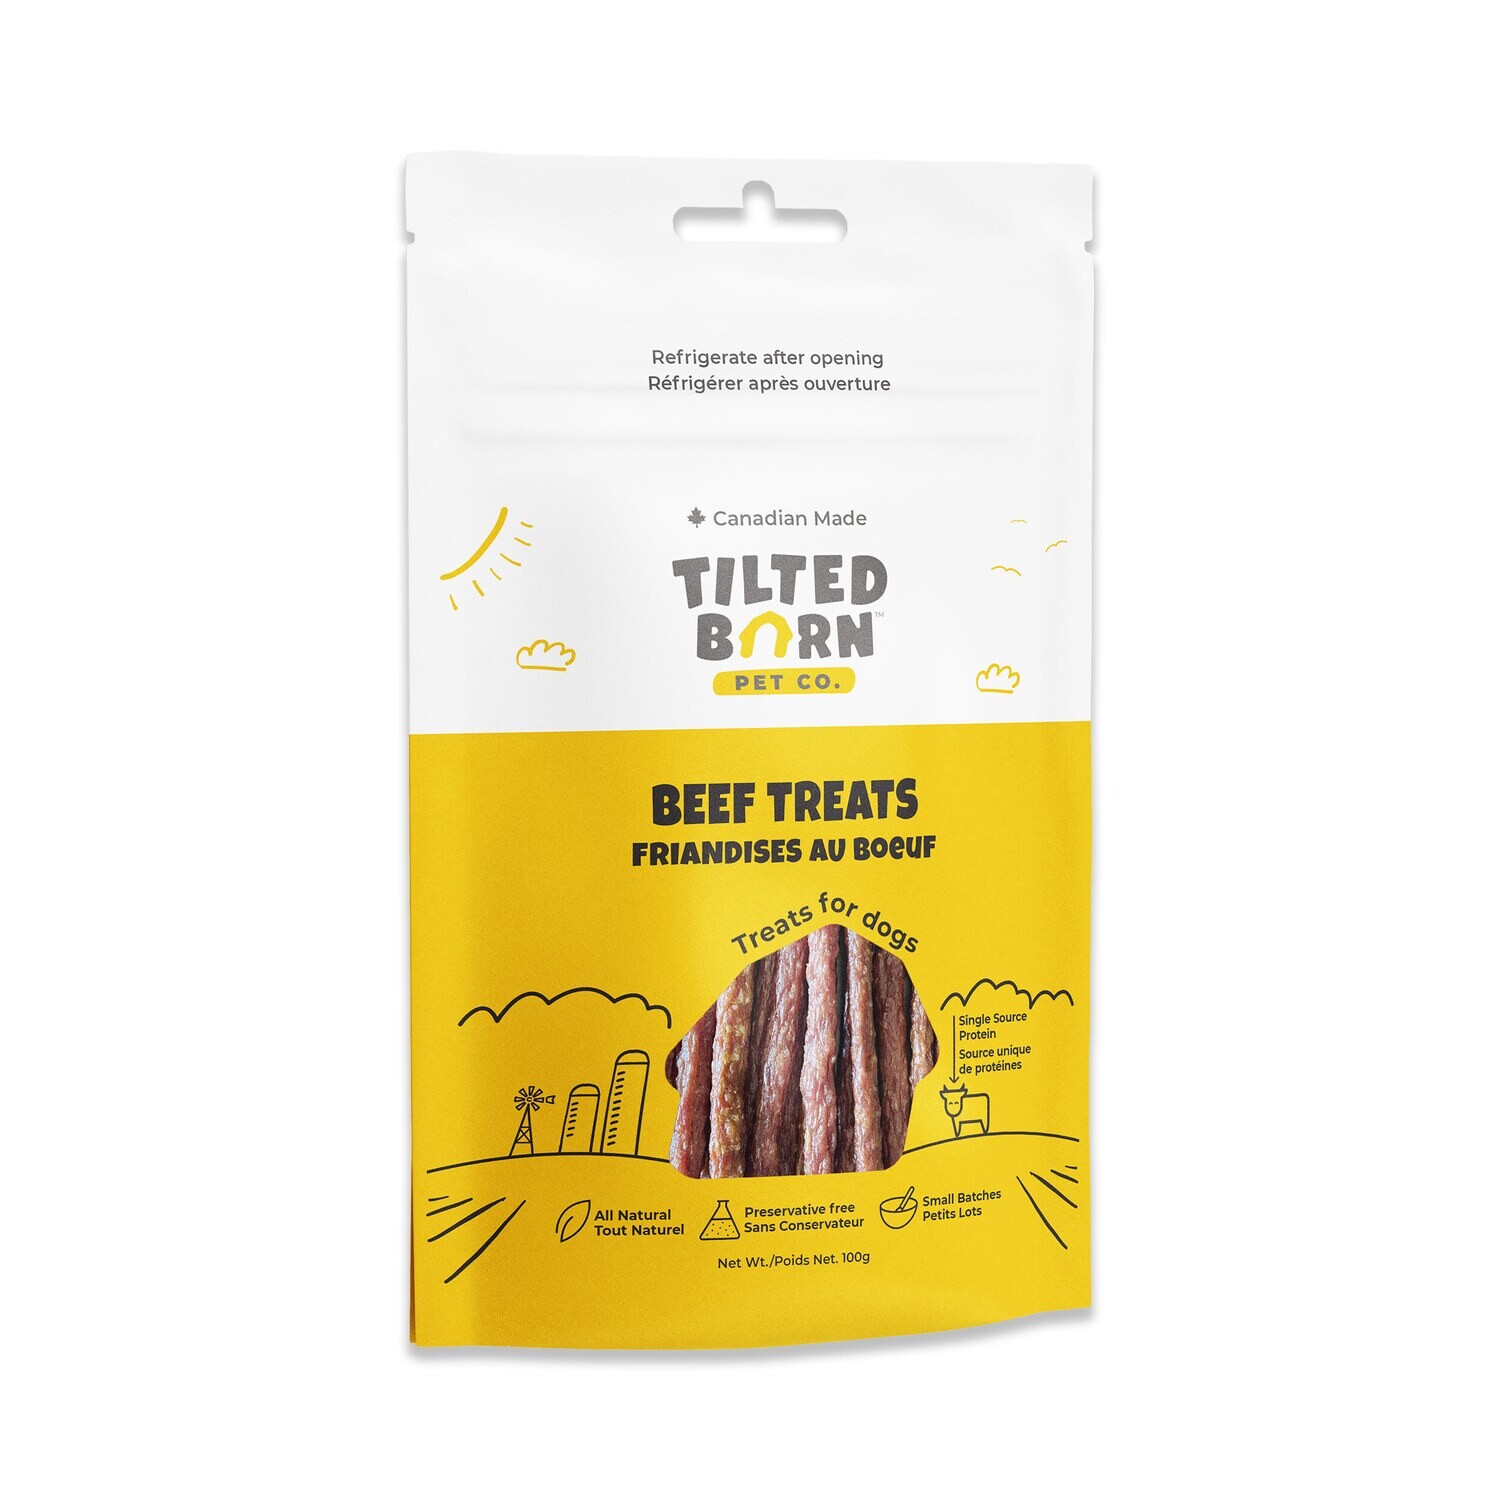 TILTED BARN BEEF TREATS